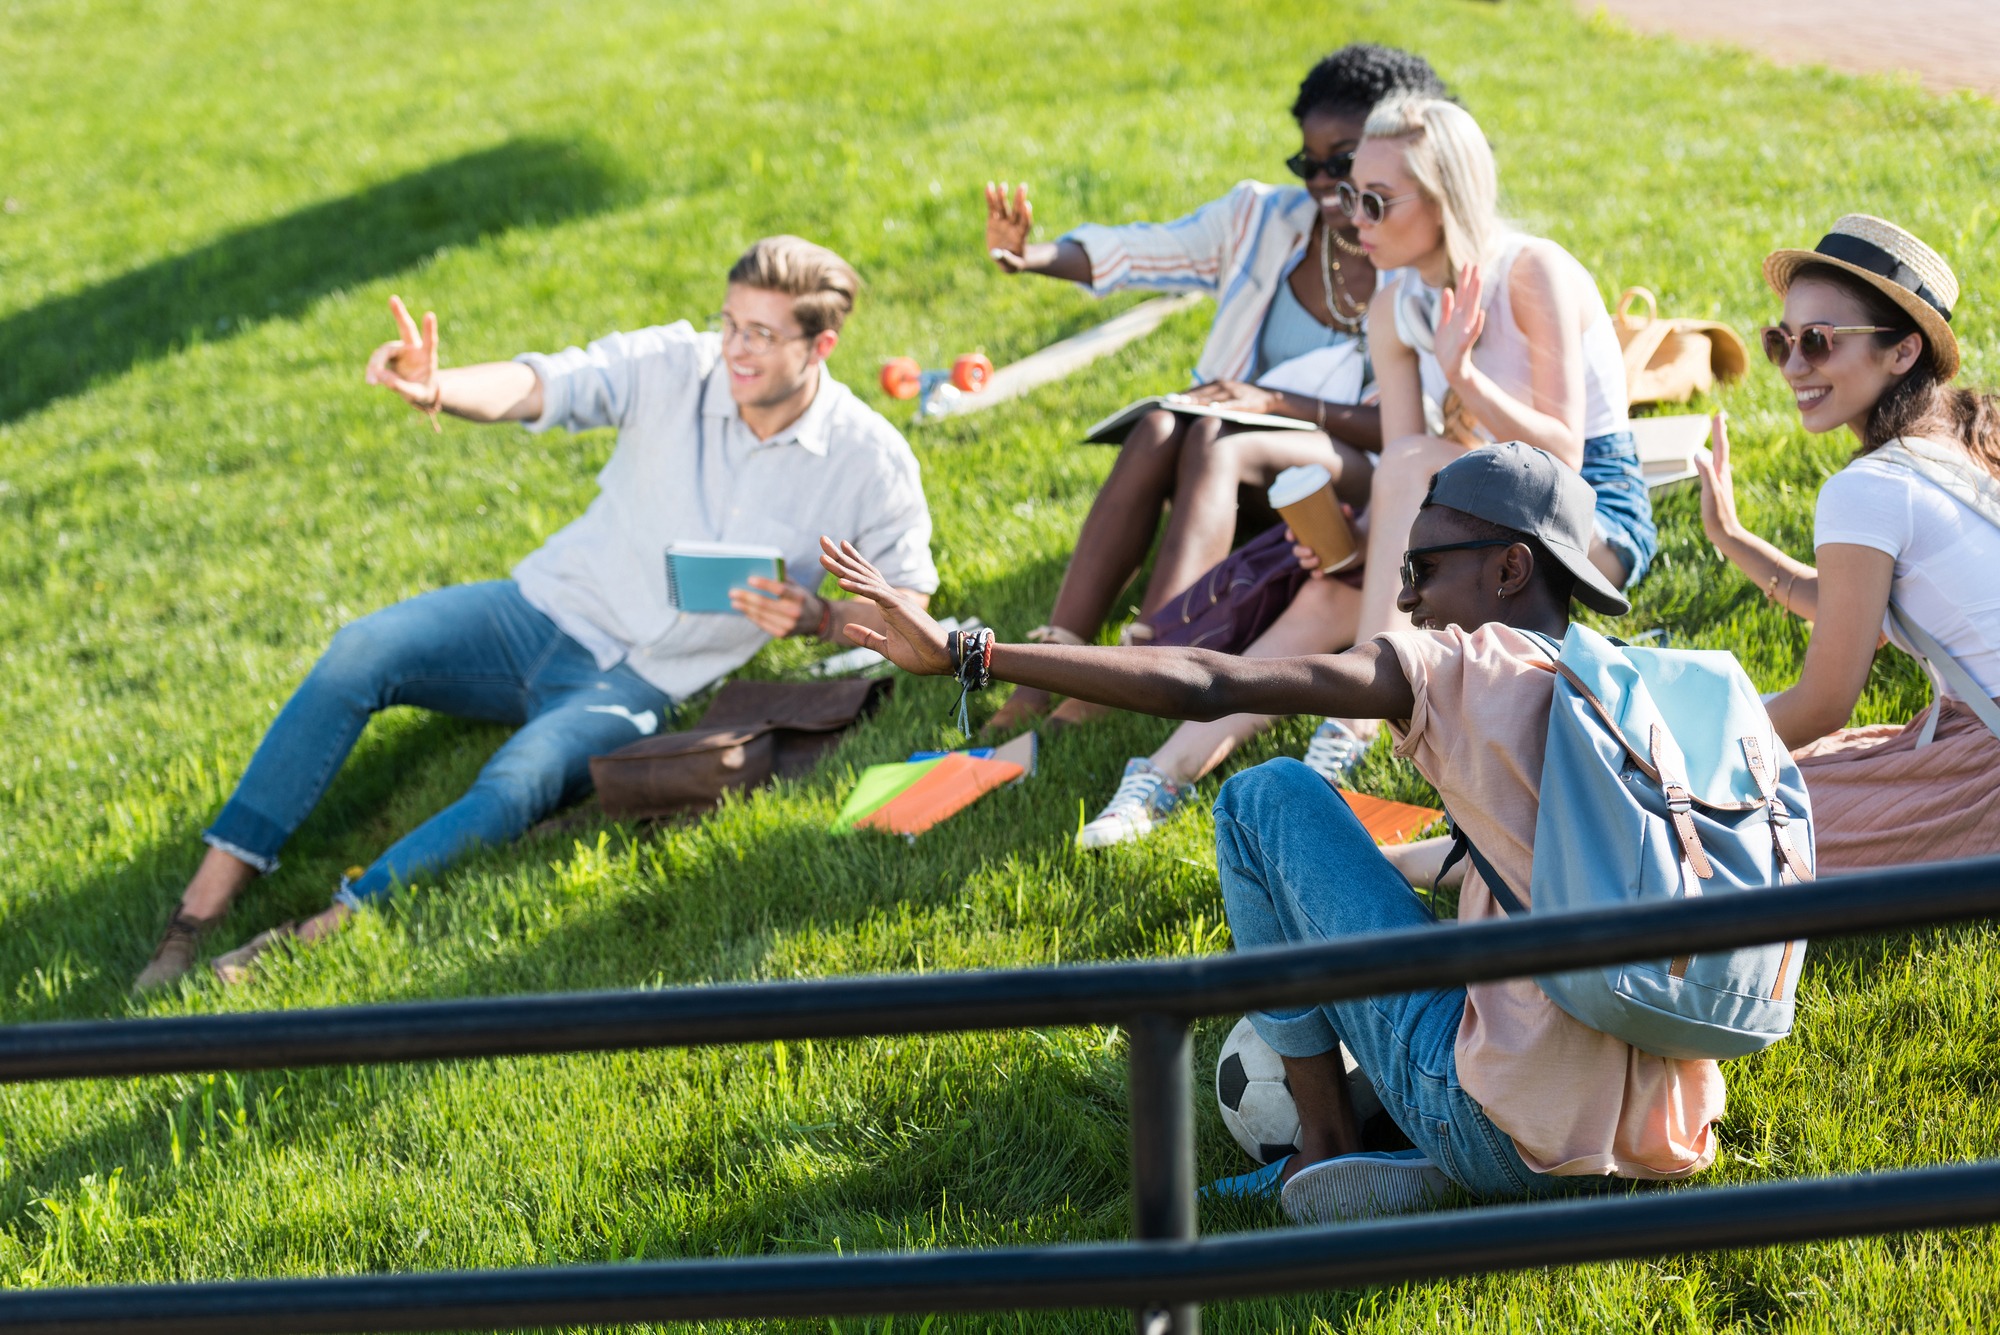 День студенты отдыхают. Студенты отдыхают за городом. Студенты отдыхают на траве возле института. Студенты отдыхают наедине. Группа студентов отдыхают в Царицыно.